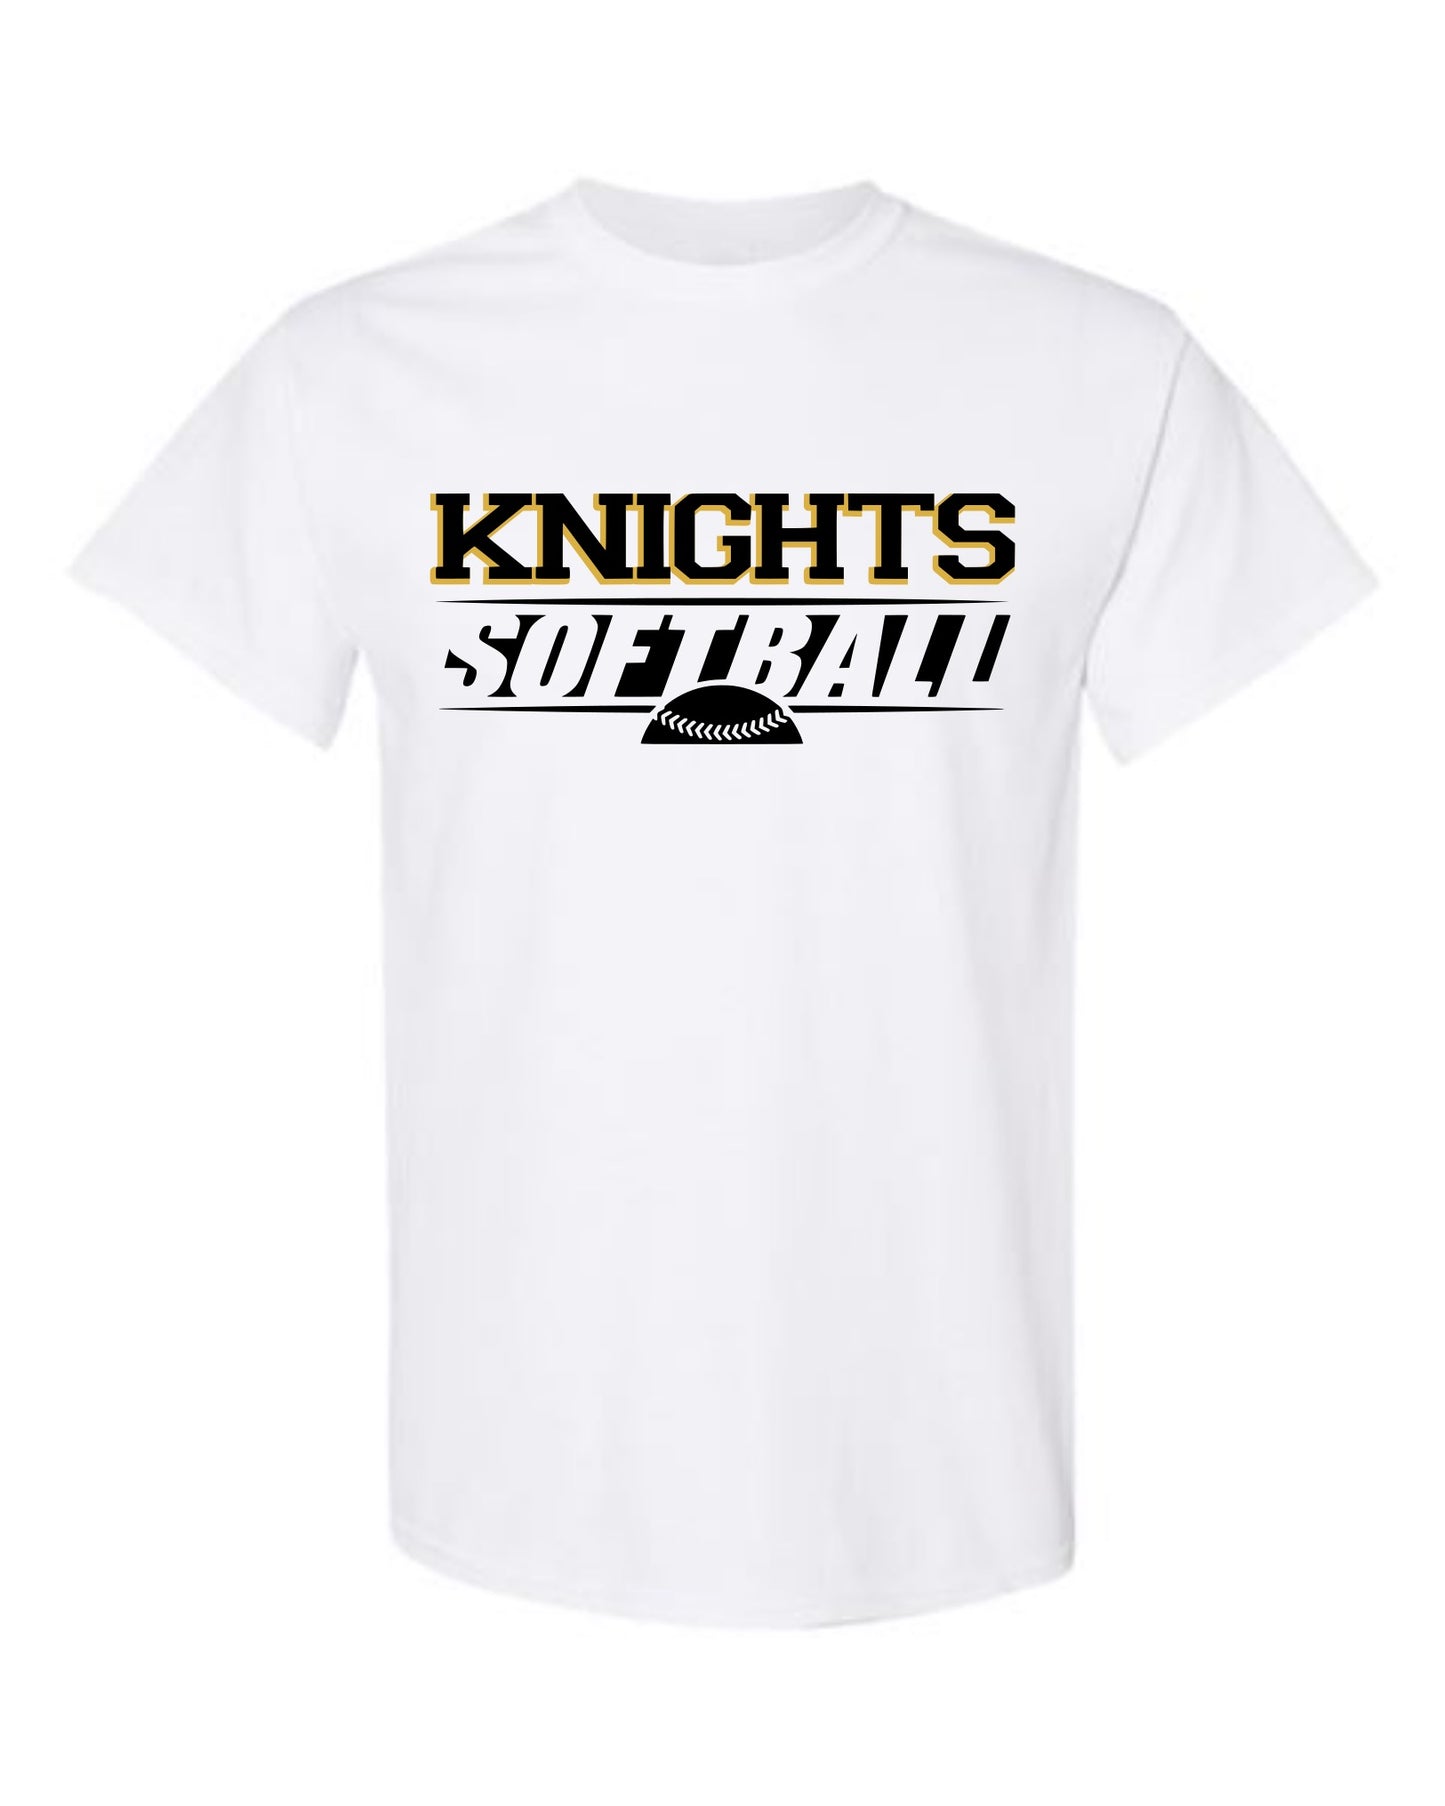 Knights Softball Tshirt